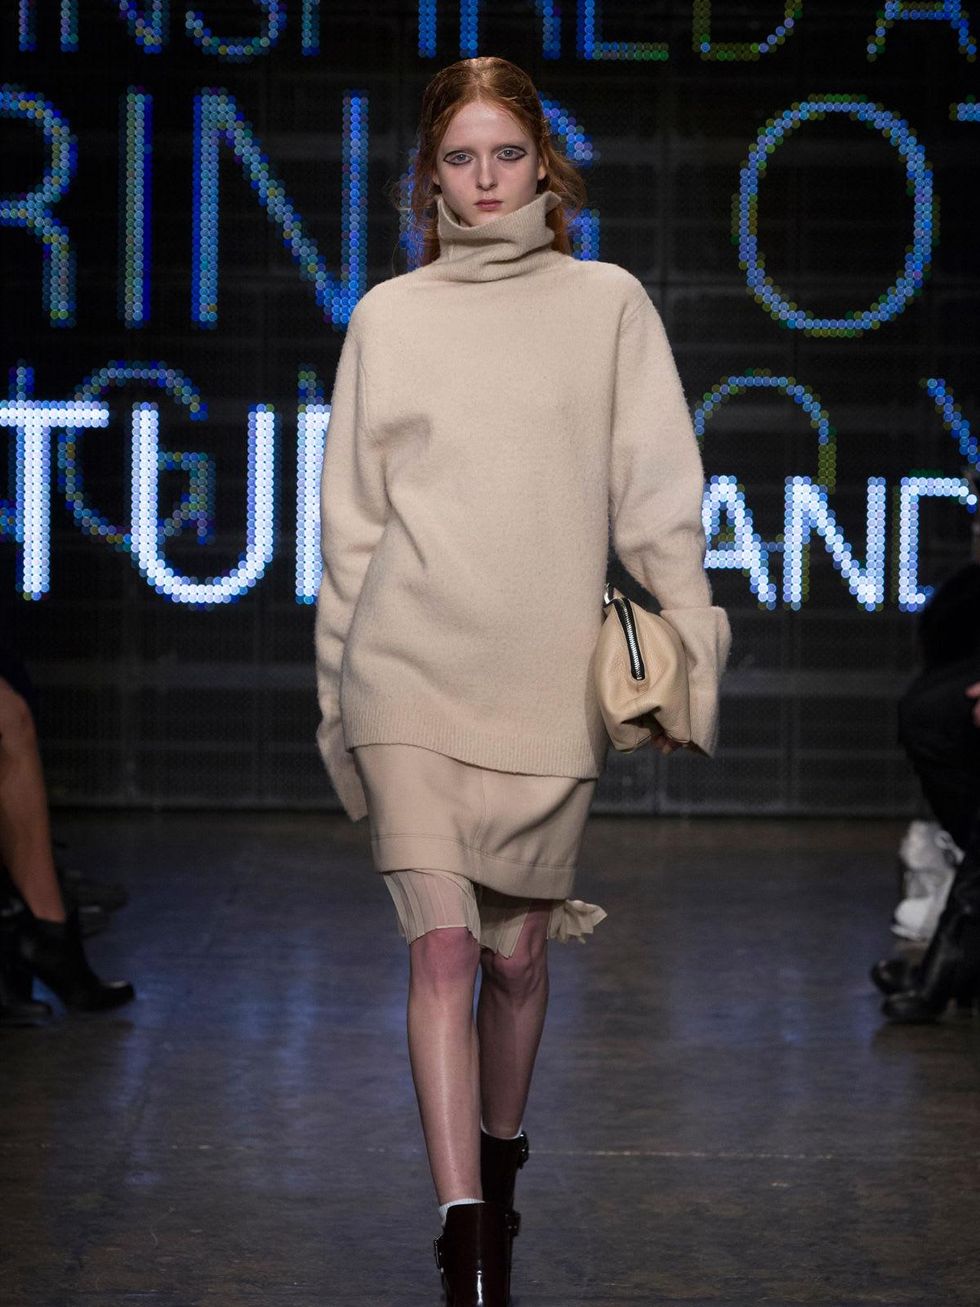 07 Clifford Fashion Week New York Fall 2015 DKNY February 2015